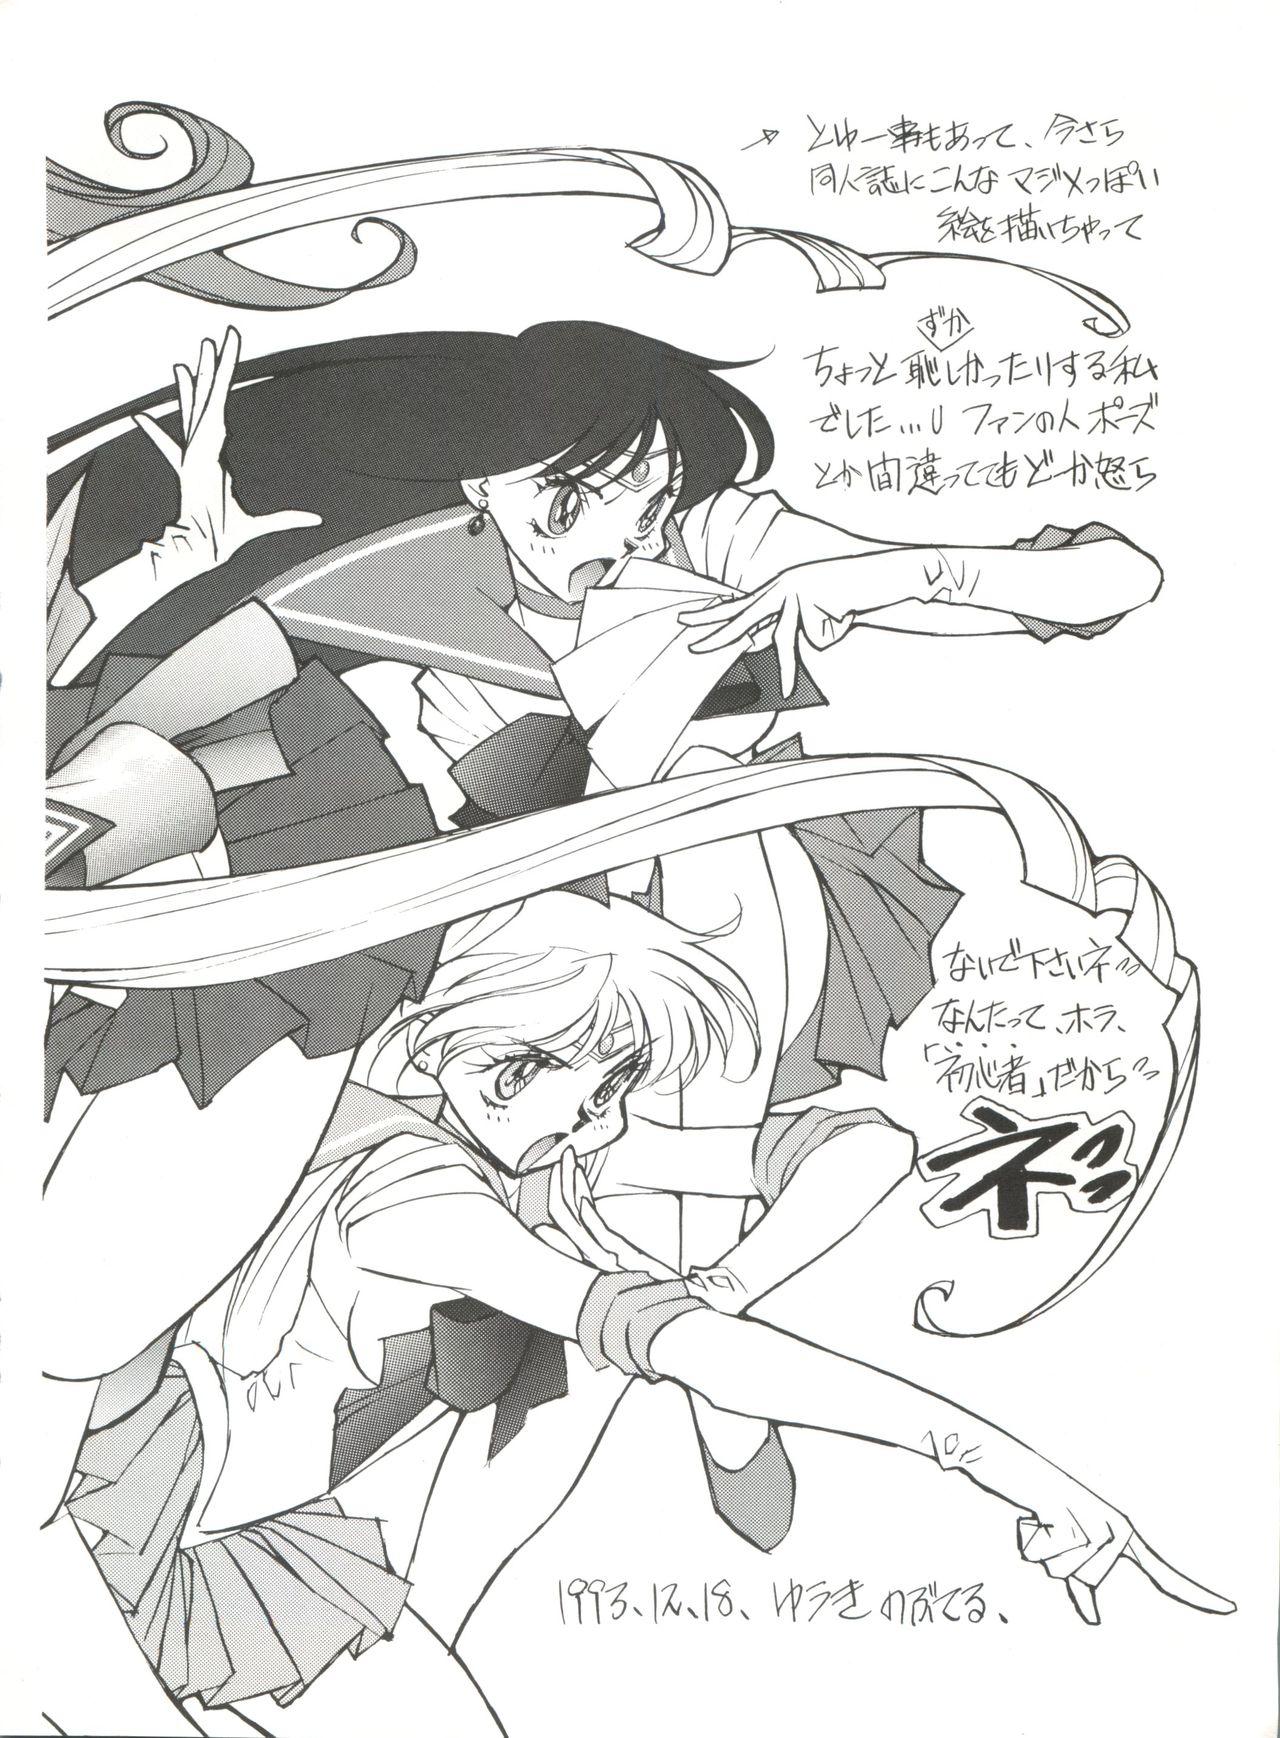 Beach Gekkou 4 - Sailor moon Massage Sex - Page 7